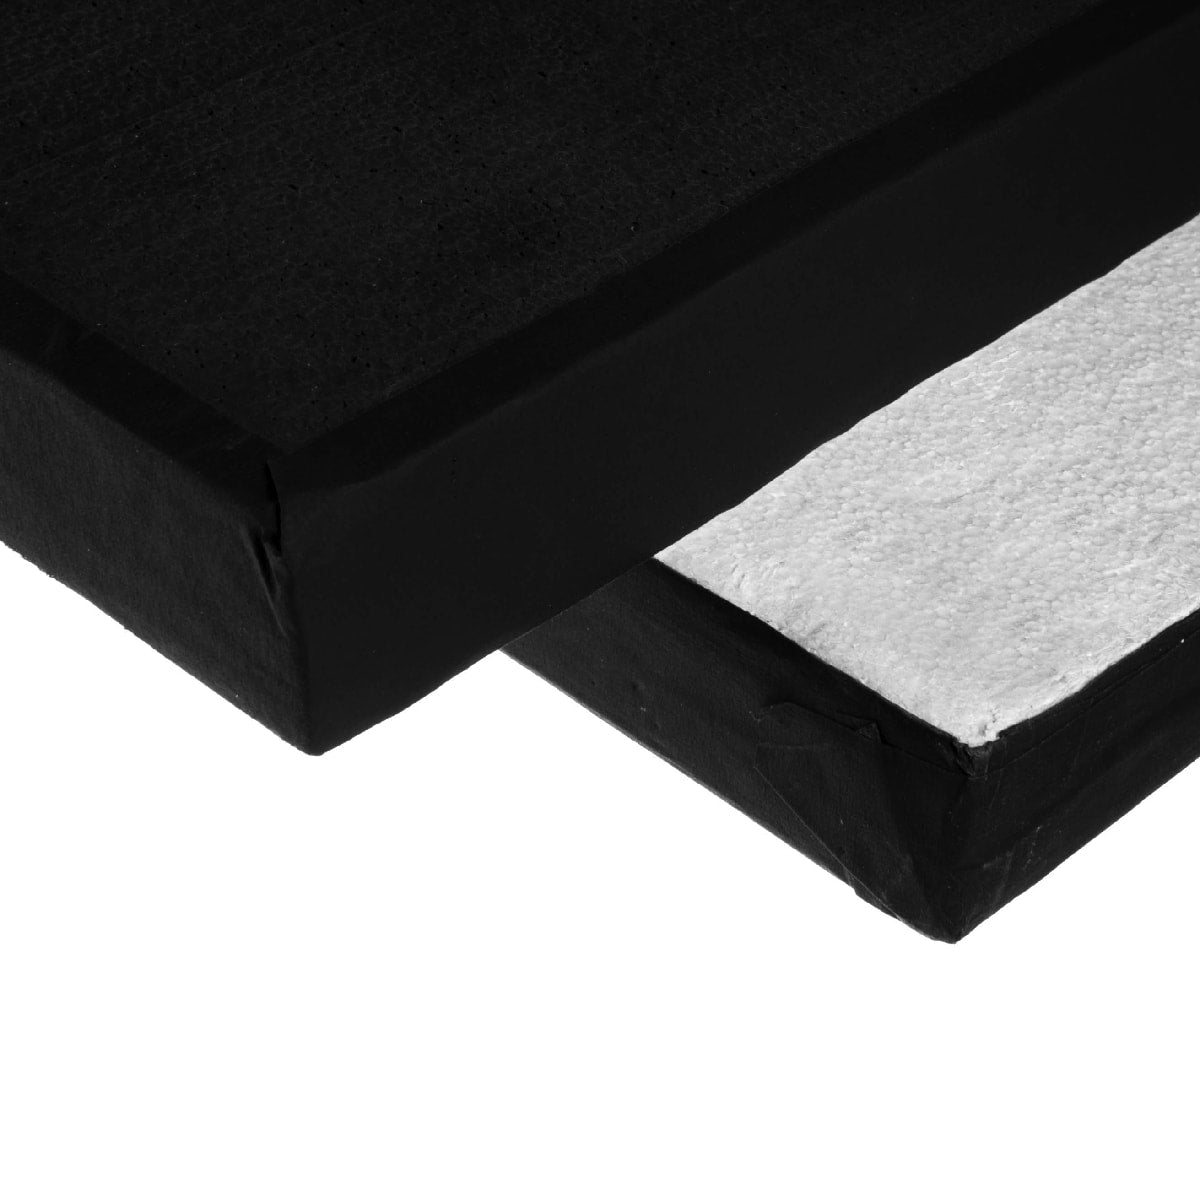  Polyboard black/white 60 x 60 cm / 2 x 2'